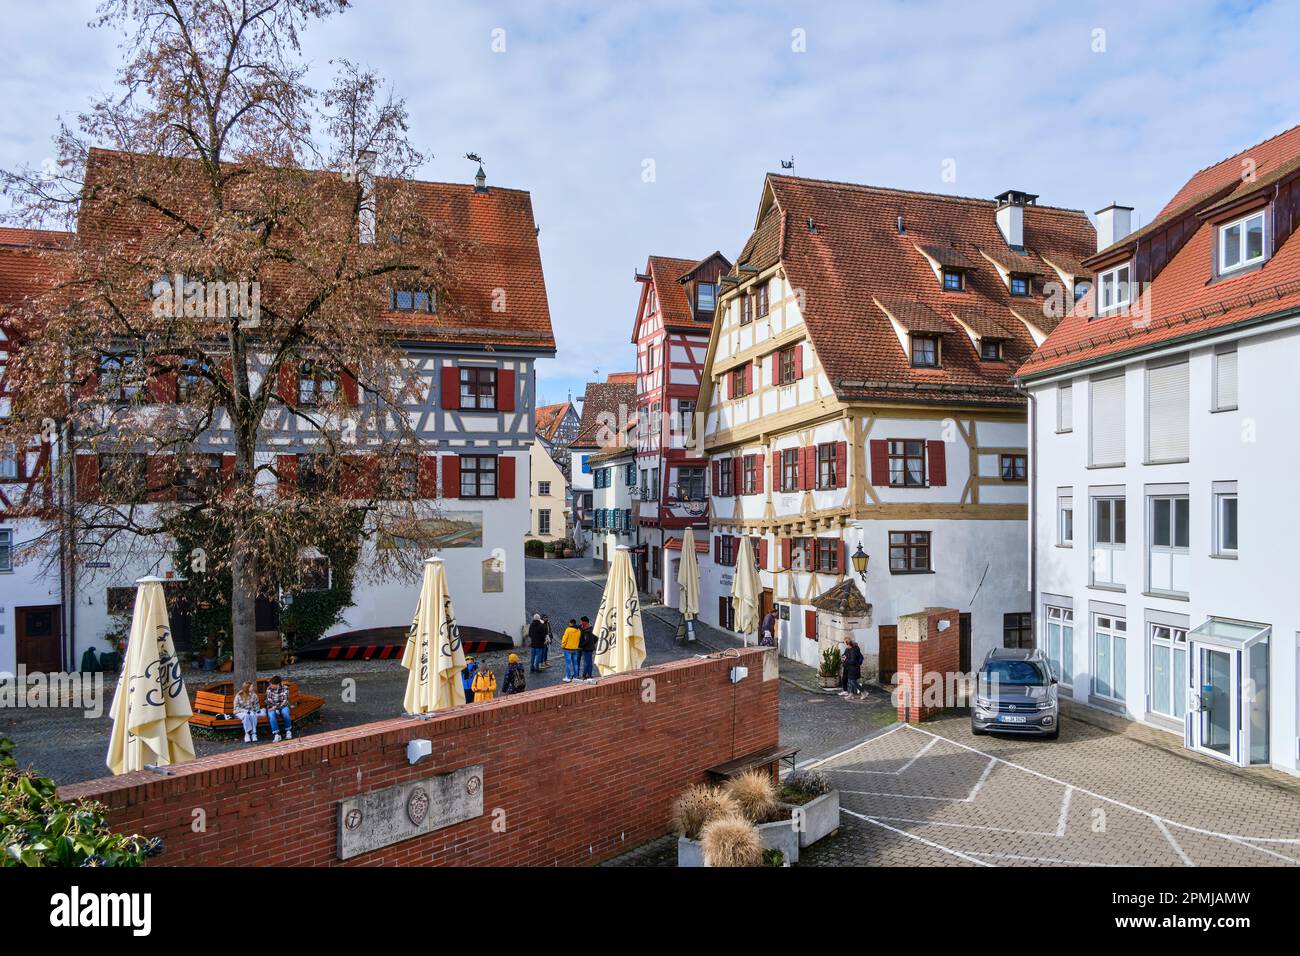 Ulm, Bade-Wurtemberg, Allemagne, Europe, scène quotidienne en face de la maison de guilde des Shipmen, aujourd'hui une auberge populaire. Banque D'Images